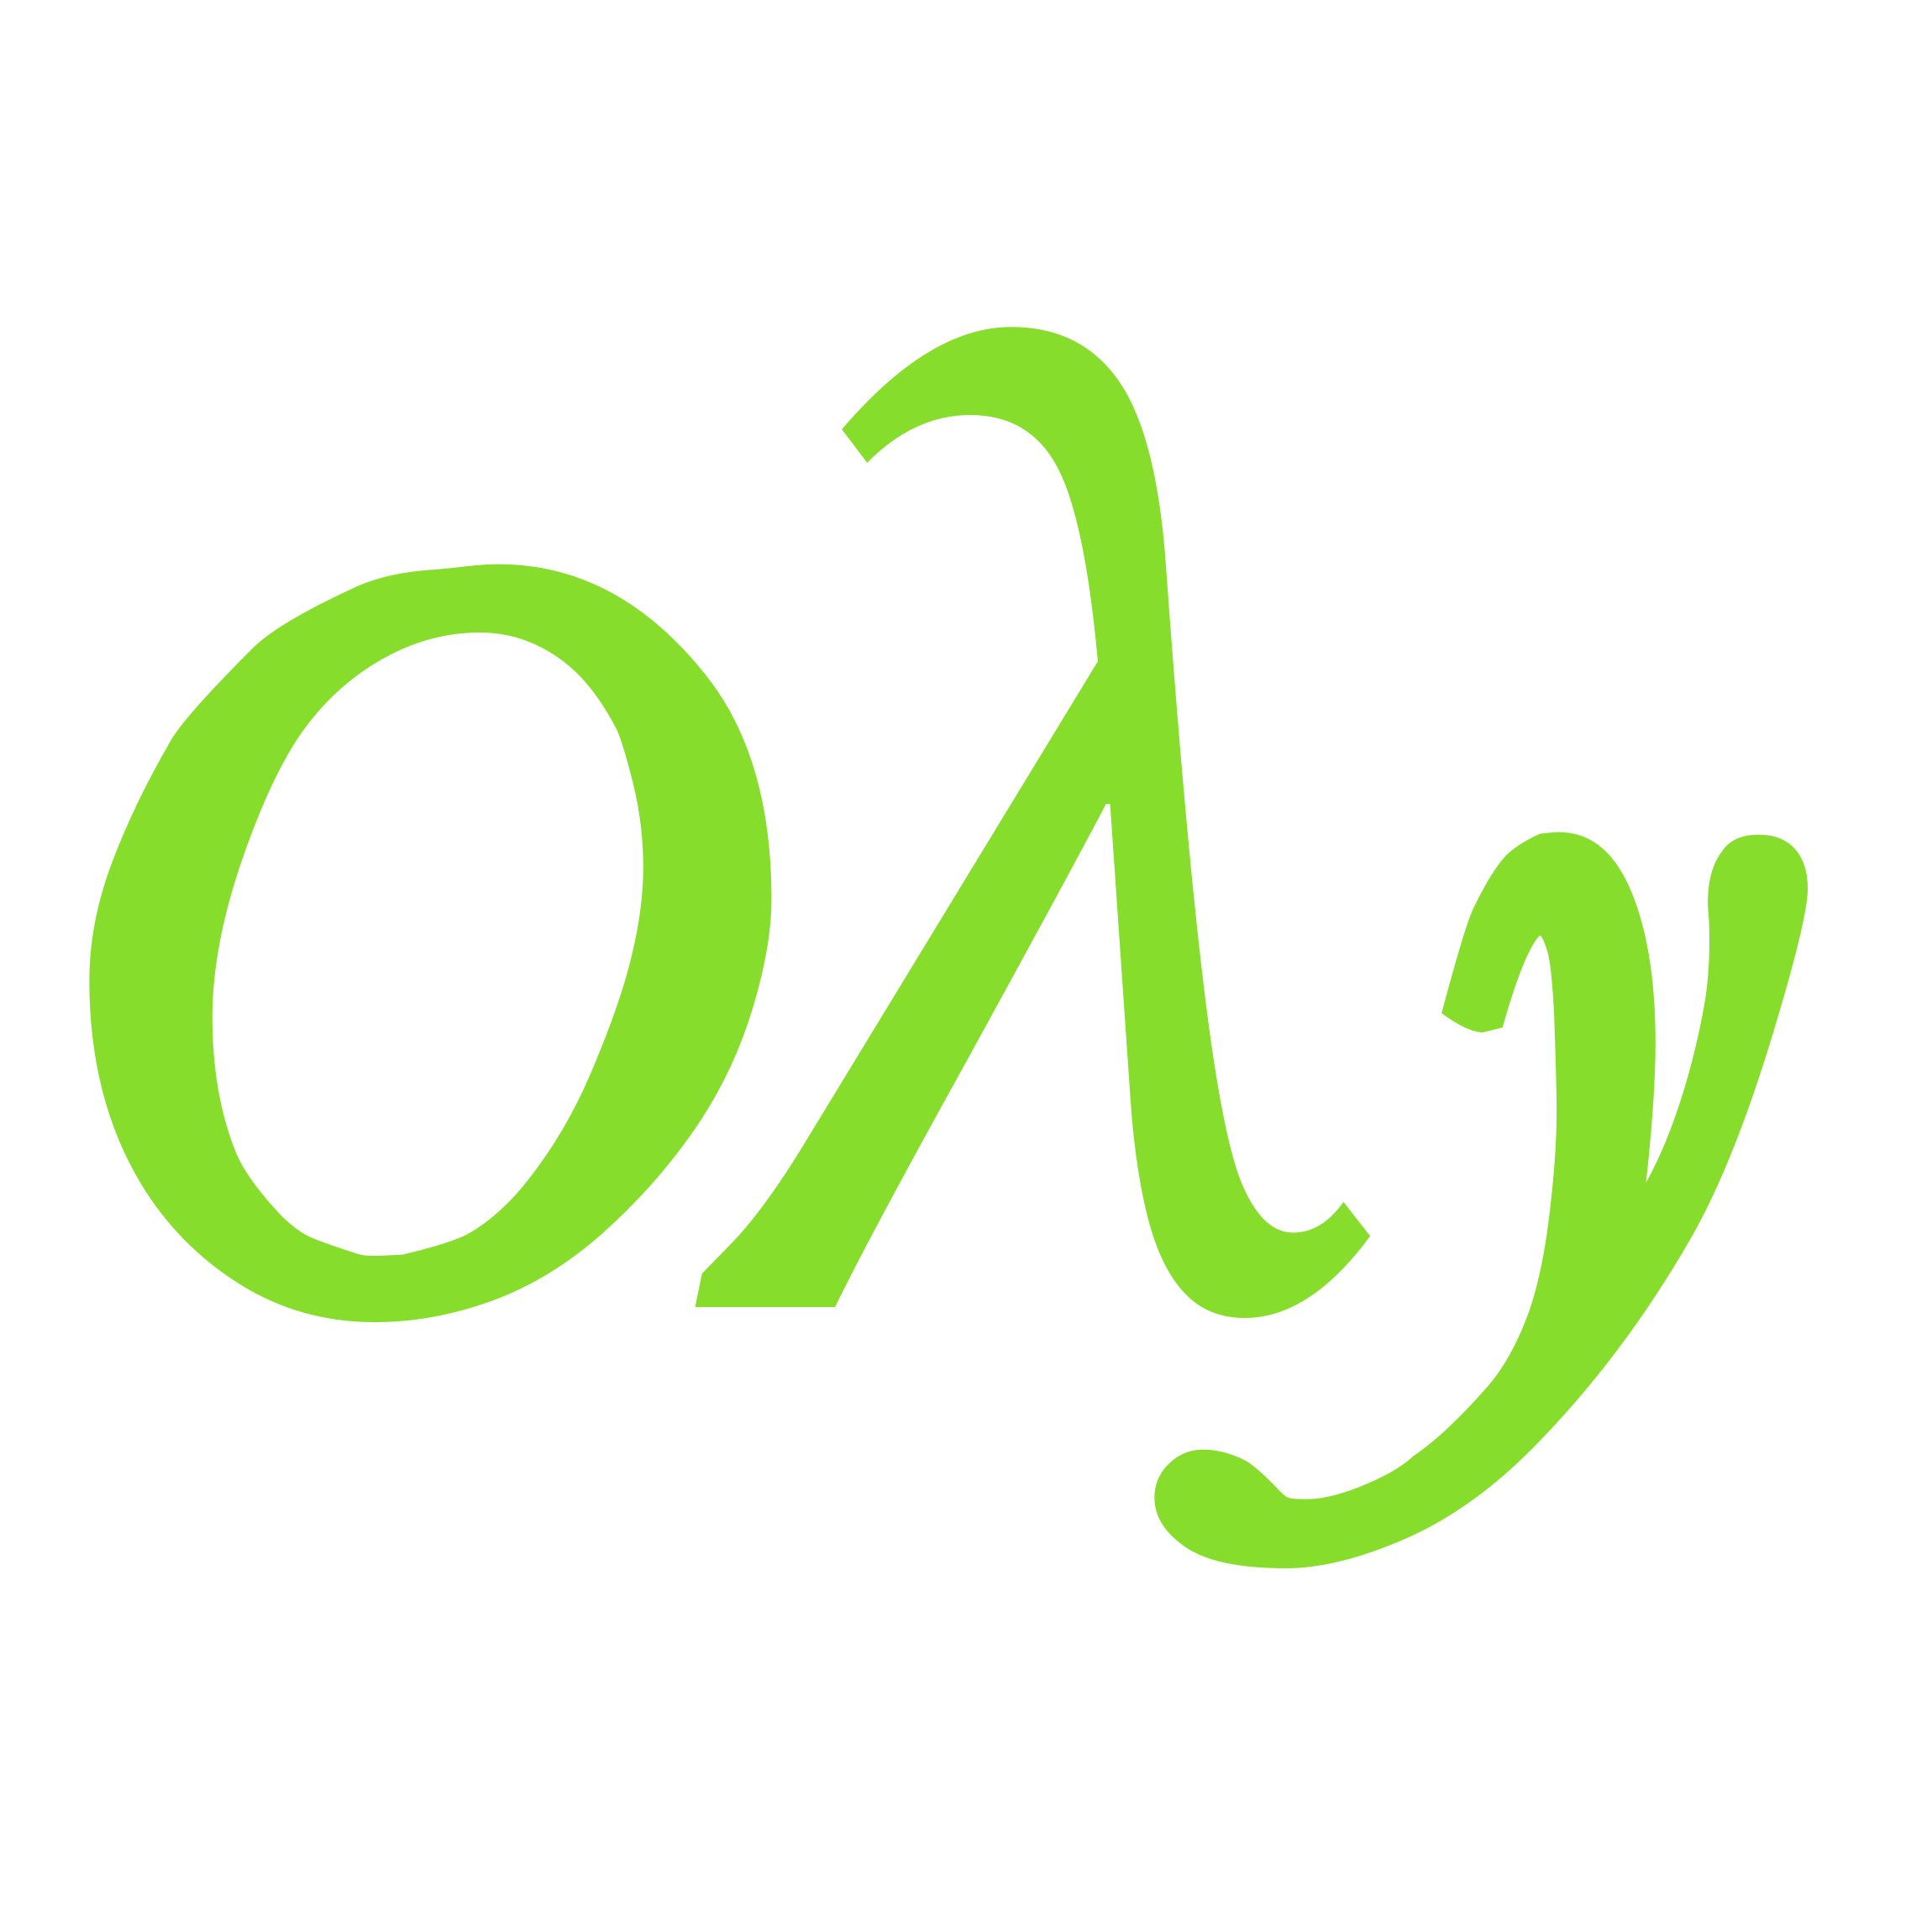 oly-logo